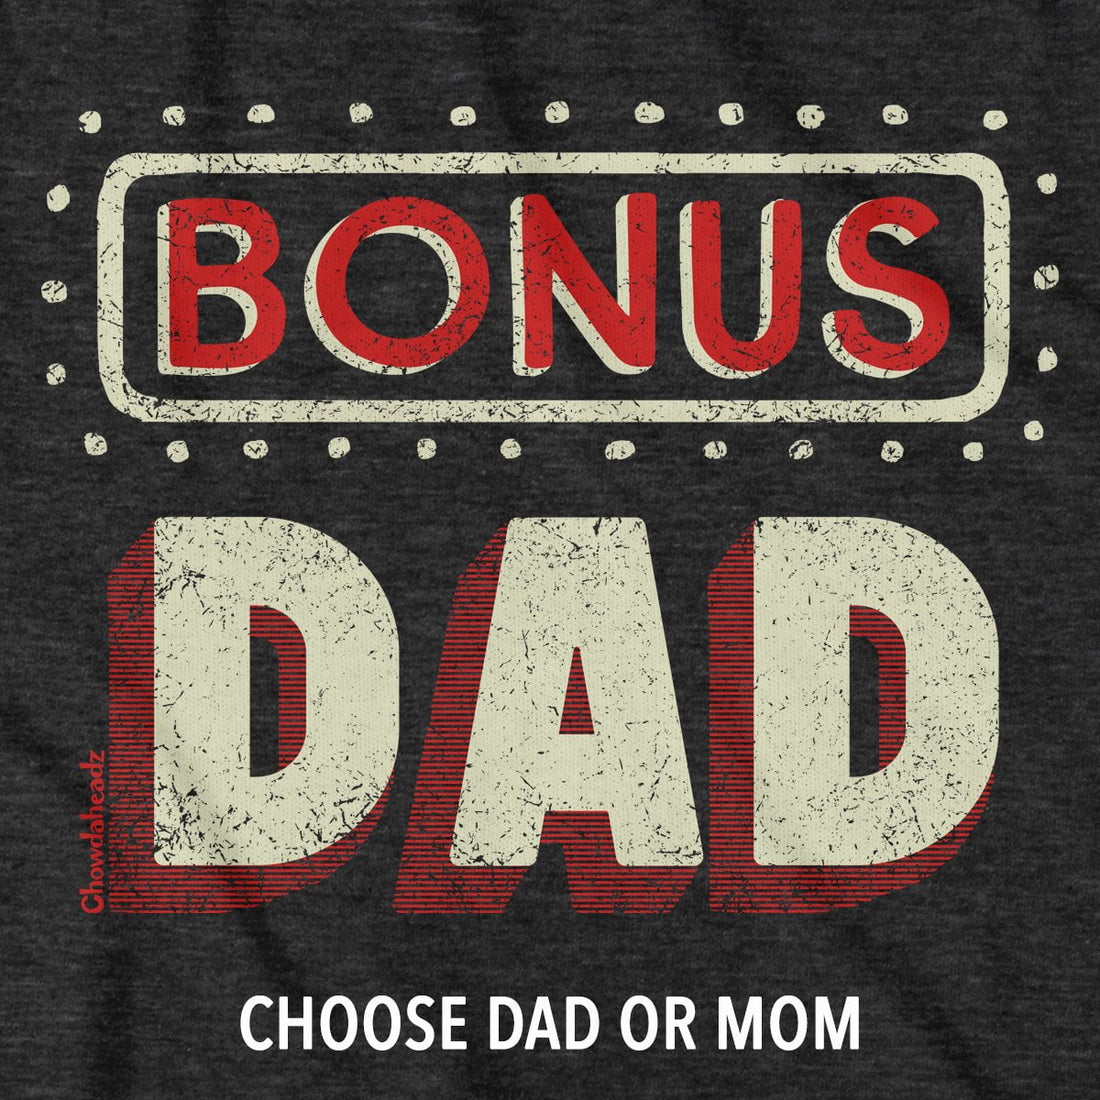 Bonus Dad / Bonus Mom T-Shirt - Chowdaheadz